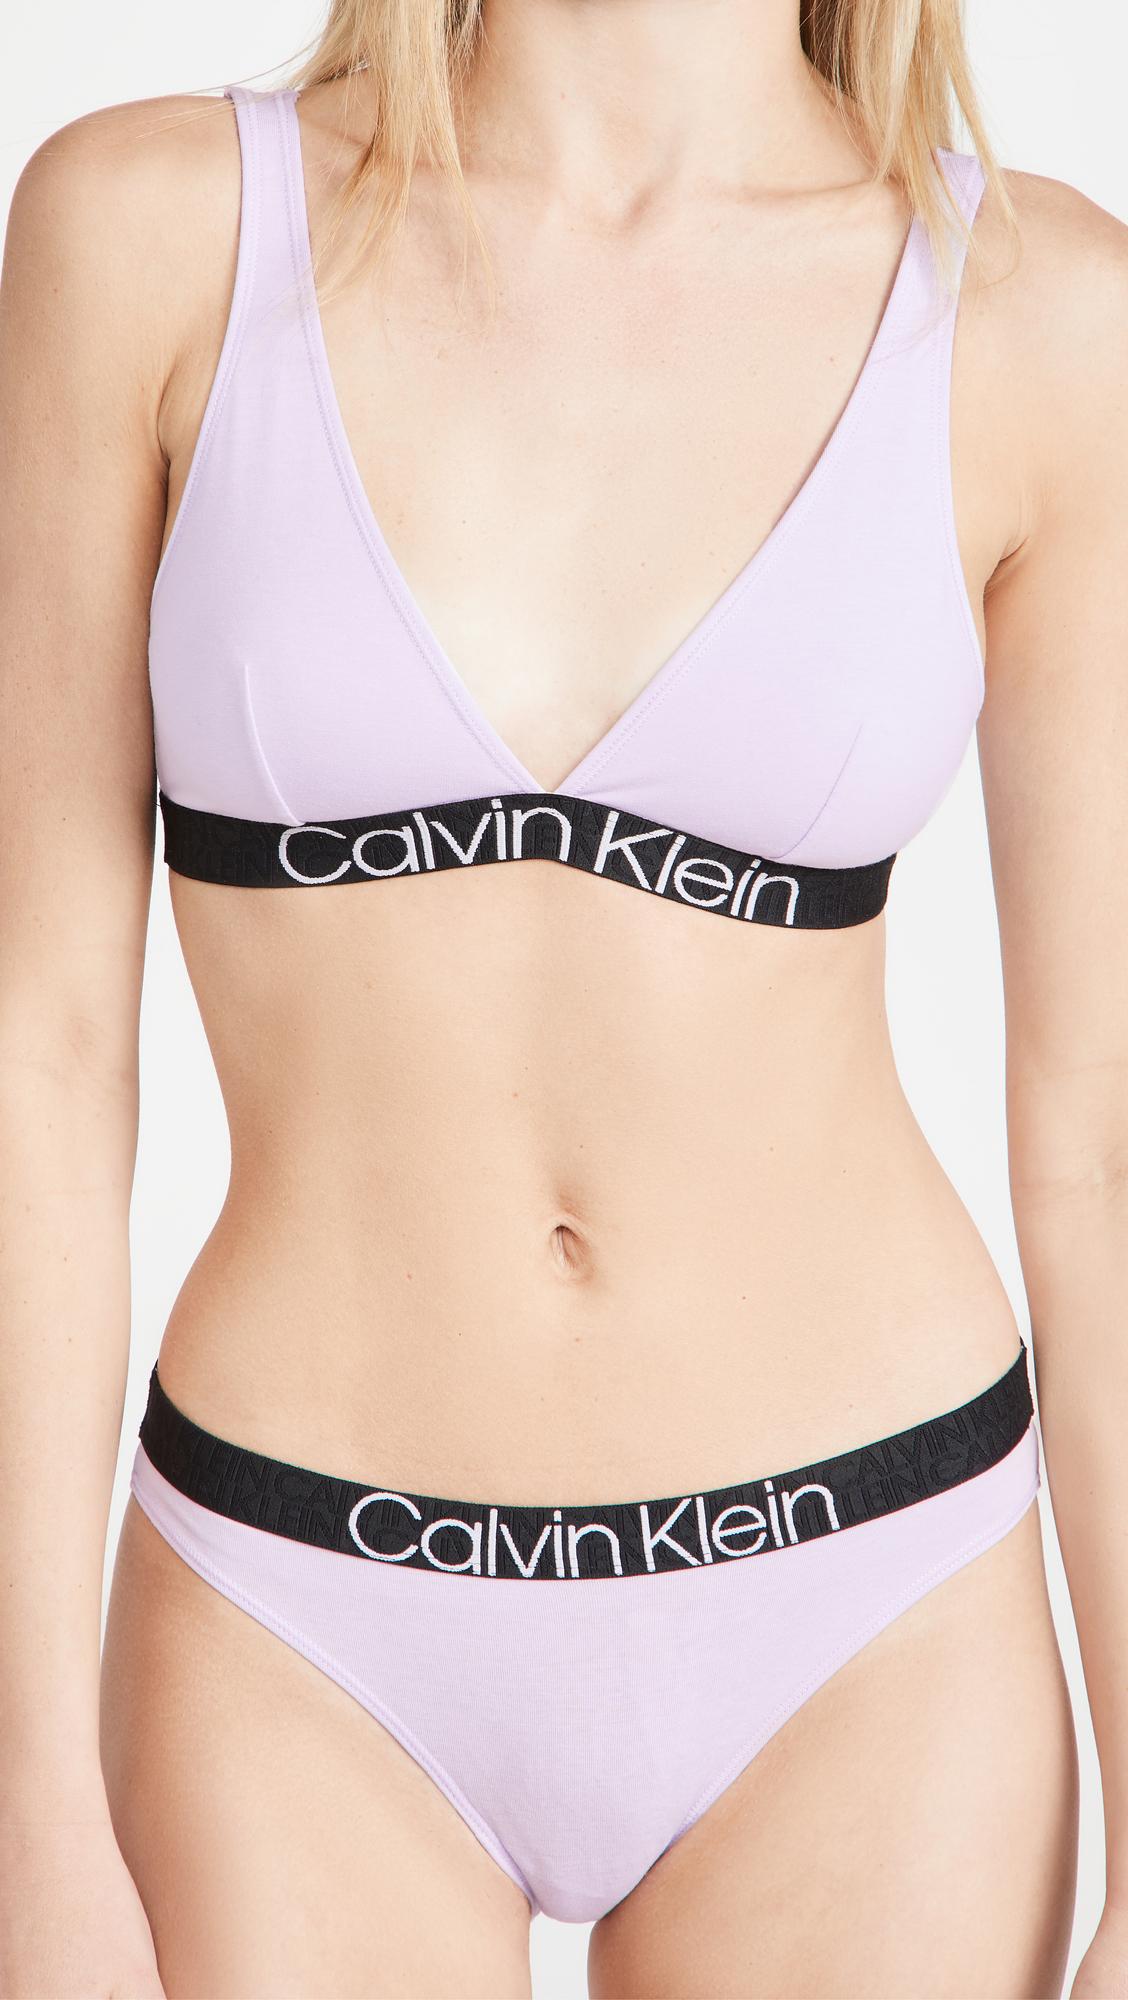 Calvin Klein Ck Underwear Lined Strap Bra Plunge-Bh Seductive